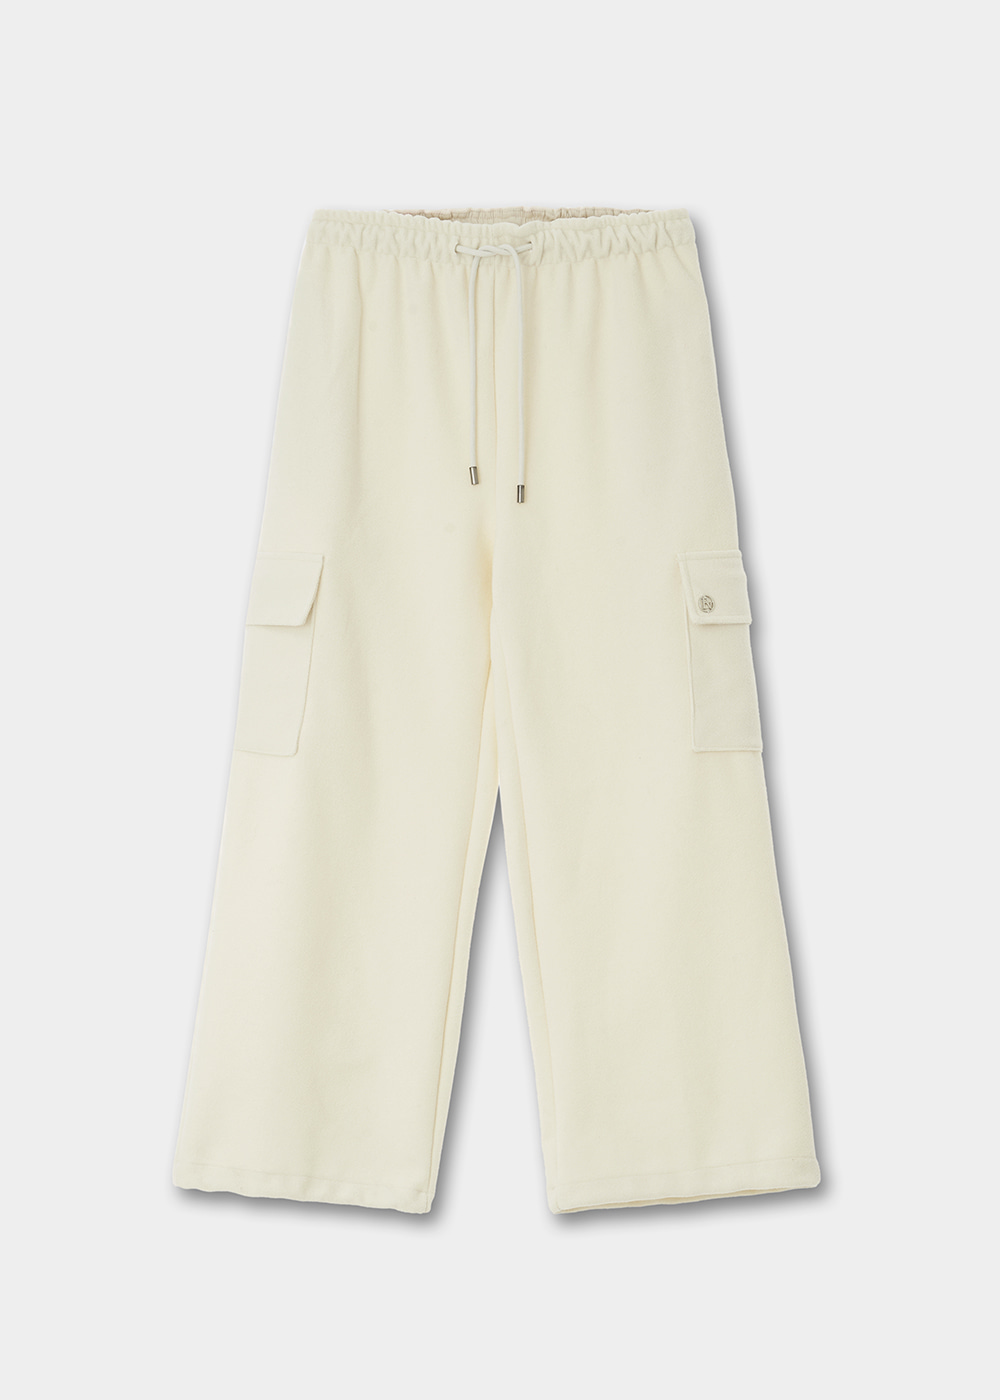 블루브릭,[B급/샘플상품] Winter cargo pants (ivory)